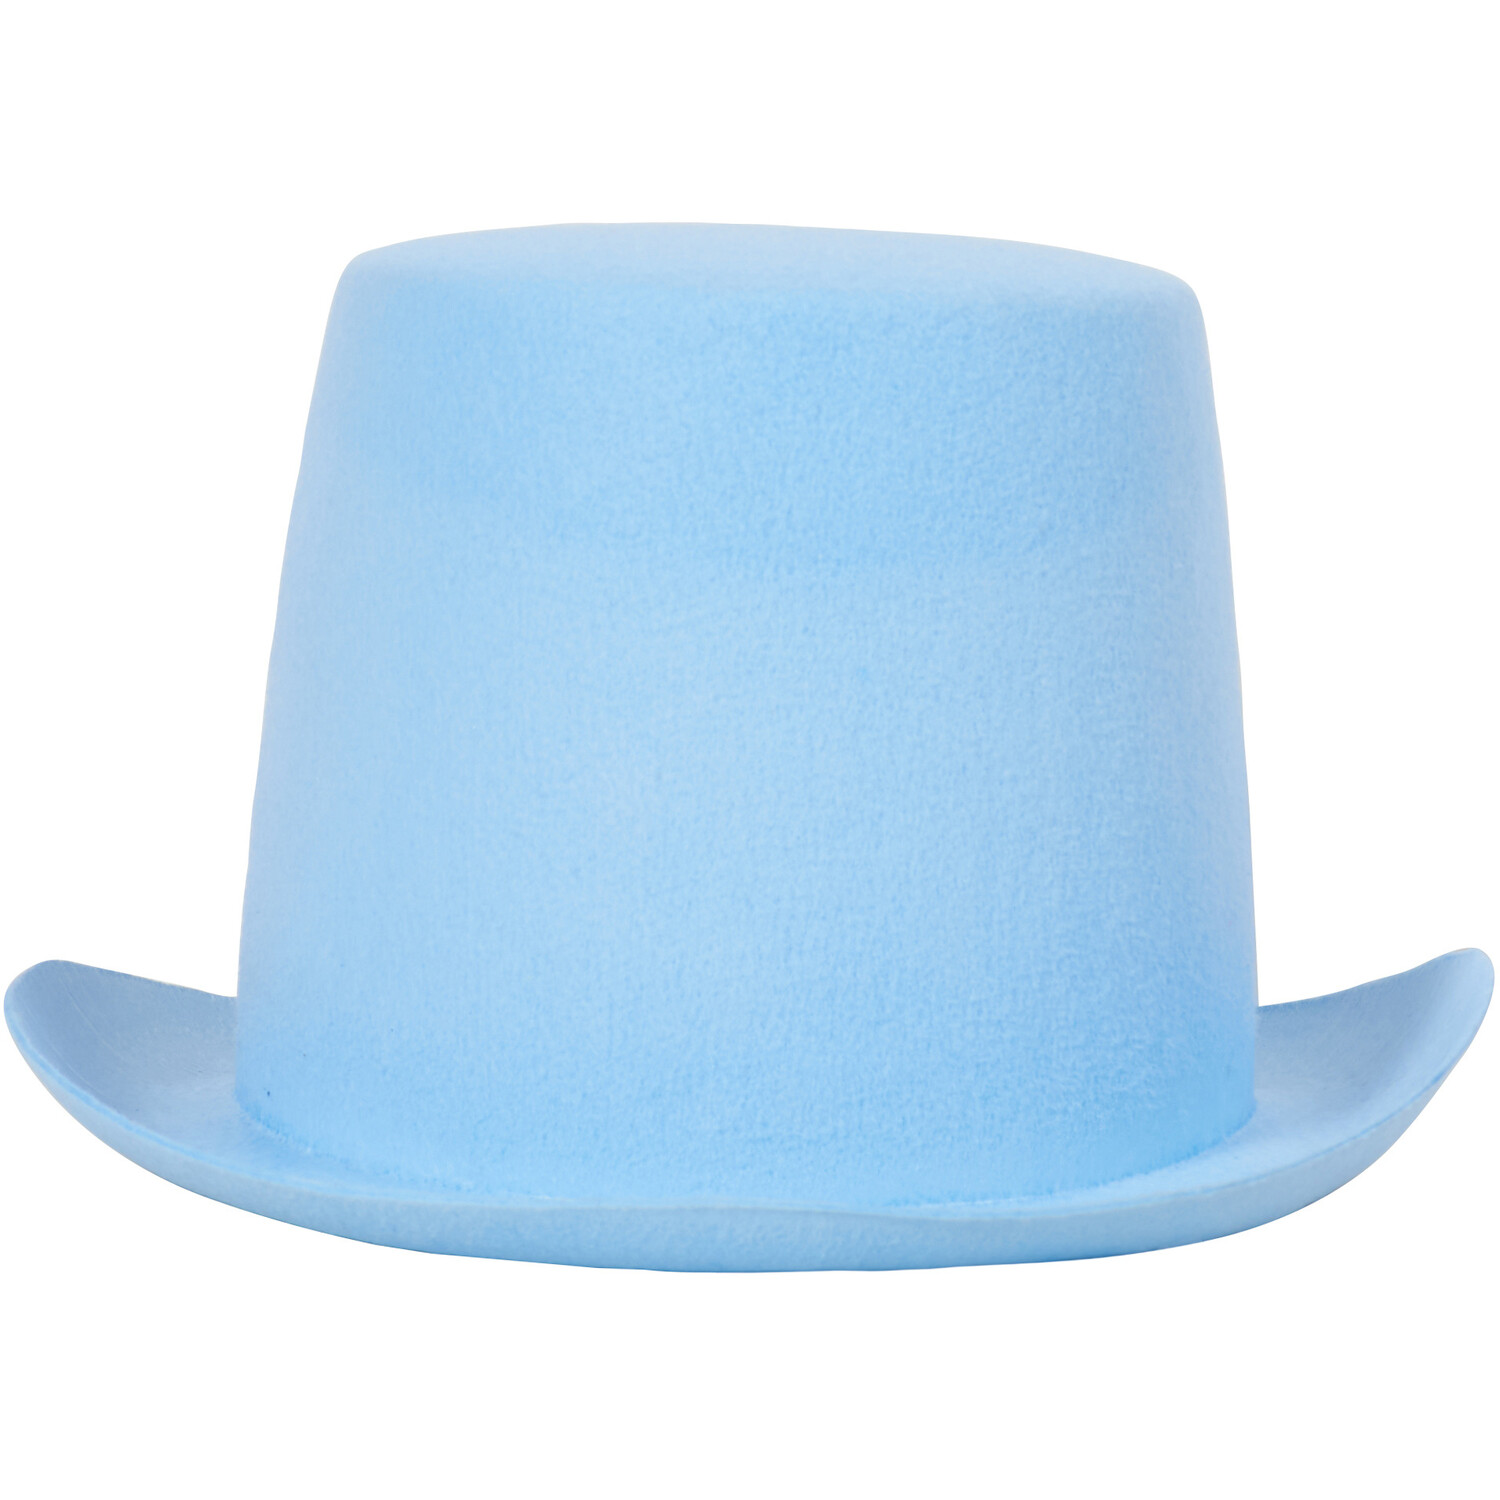 Easter Top Hat - Blue Image 1